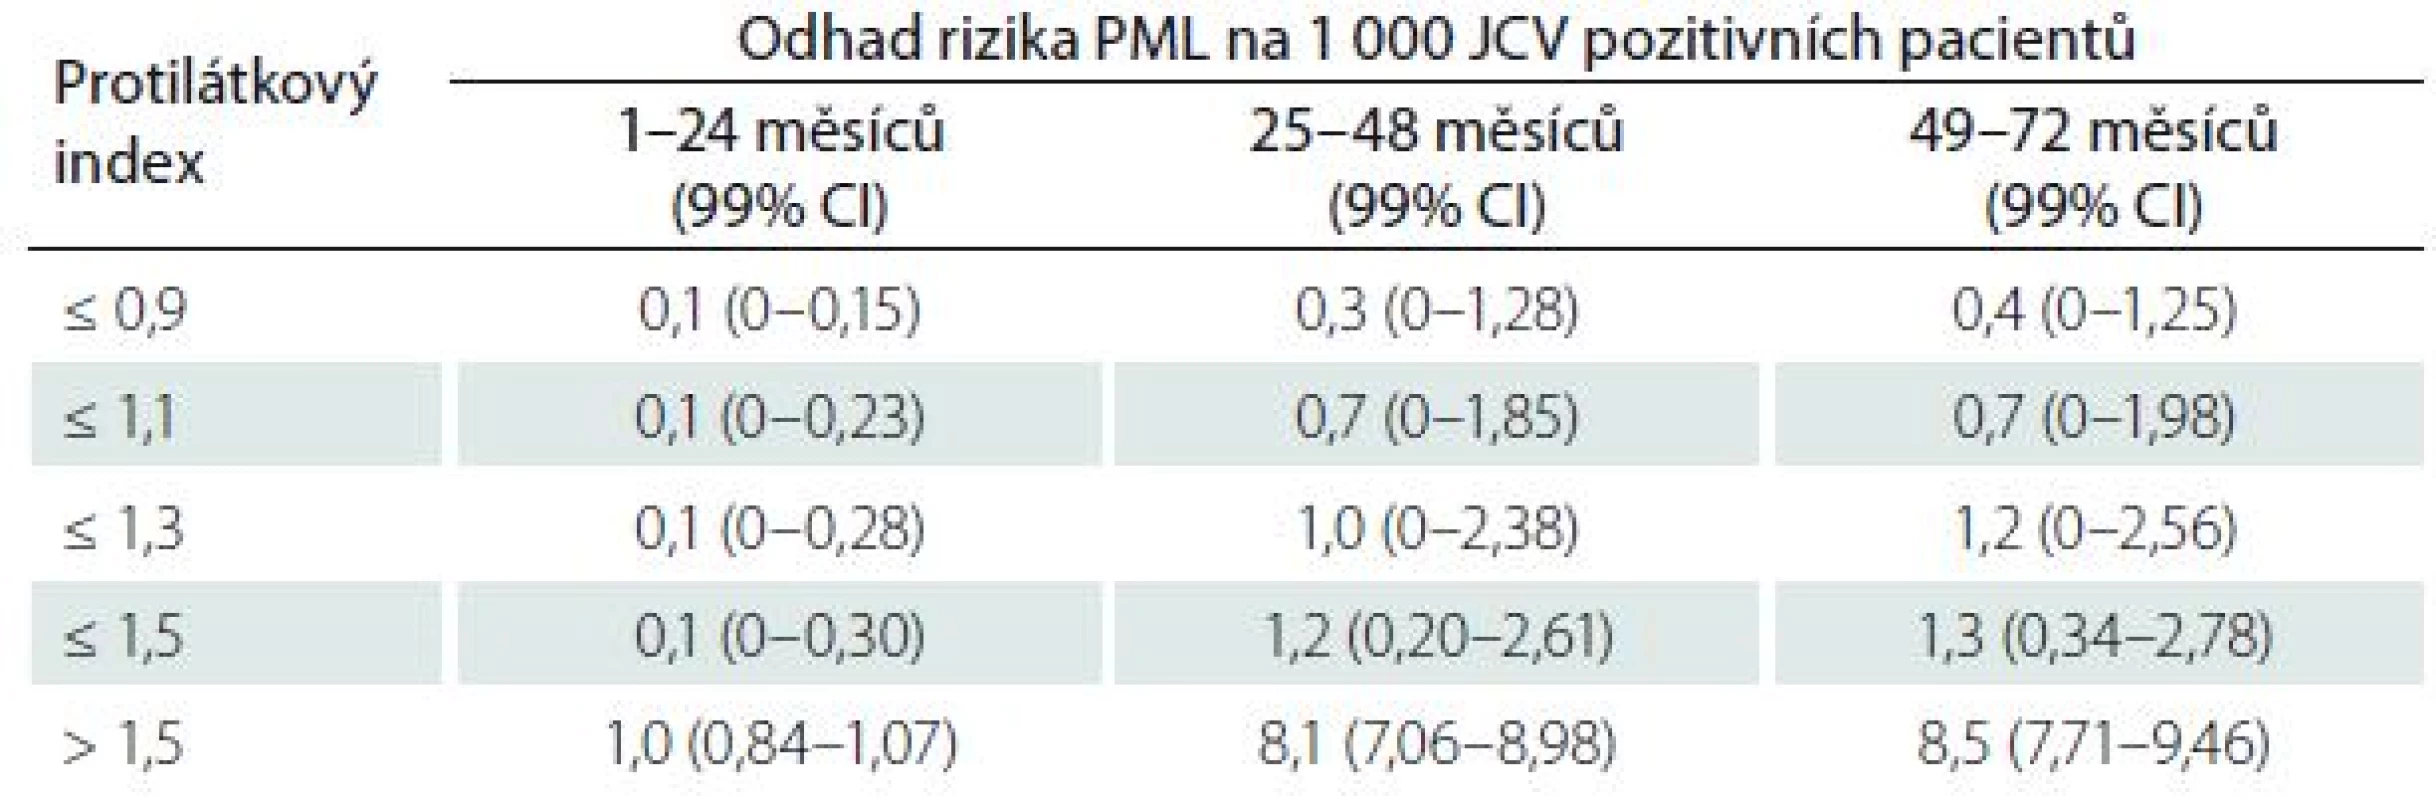 Riziko progresivní multifokální encefalopatie u pacientů léčených natalizumabem podle protilátkového JCV indexu u pacientů bez předchozí imunosupresivní léčby